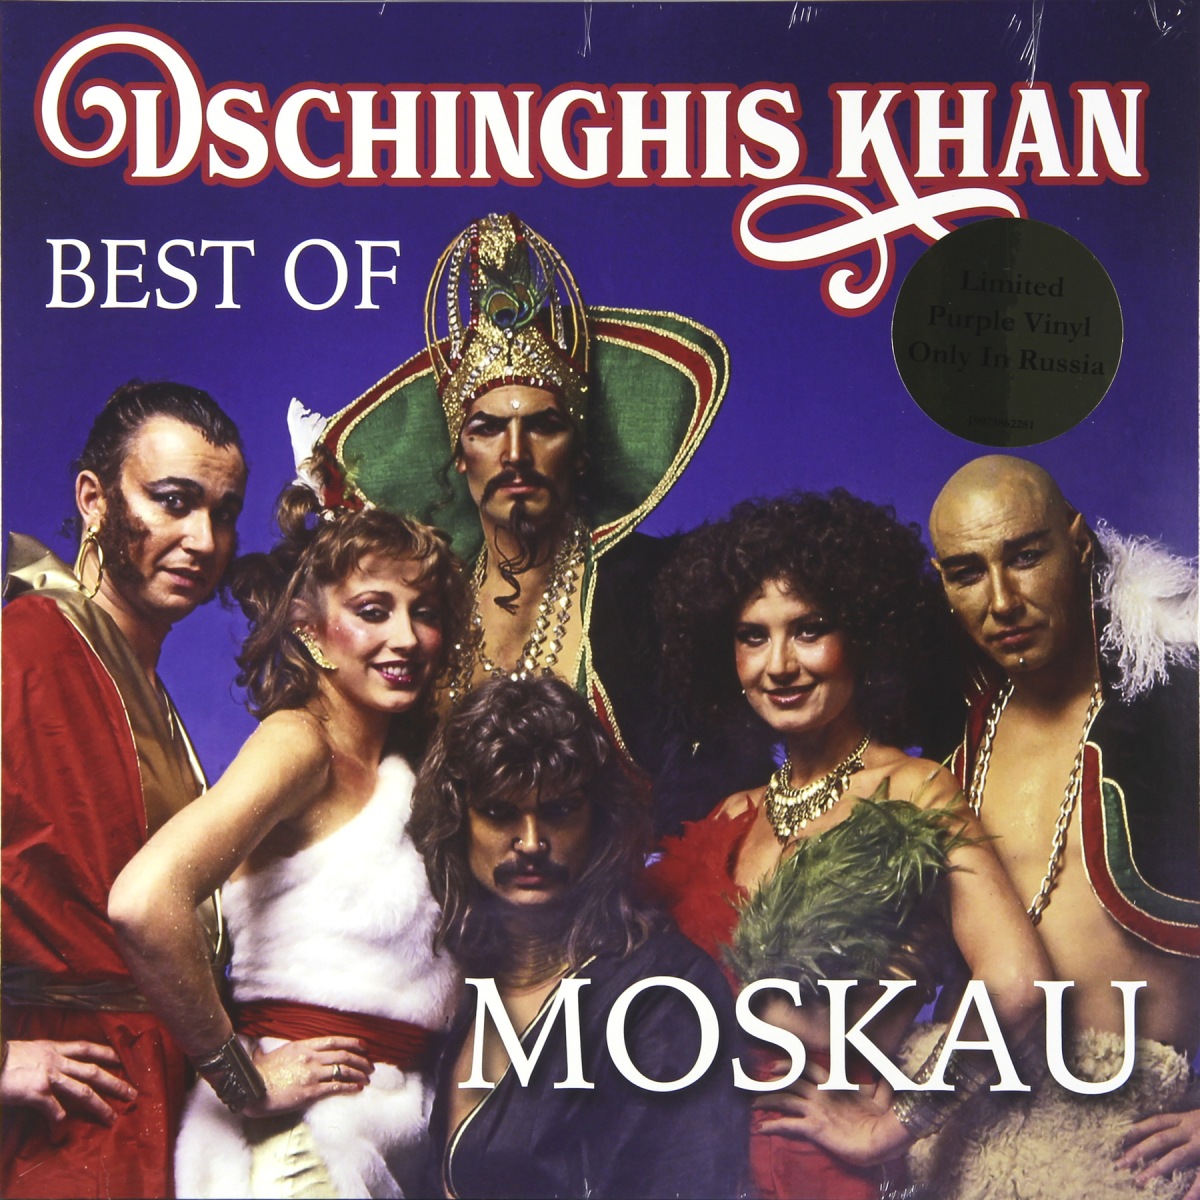 Portada del single "Moskau" de Dschinghis Khan